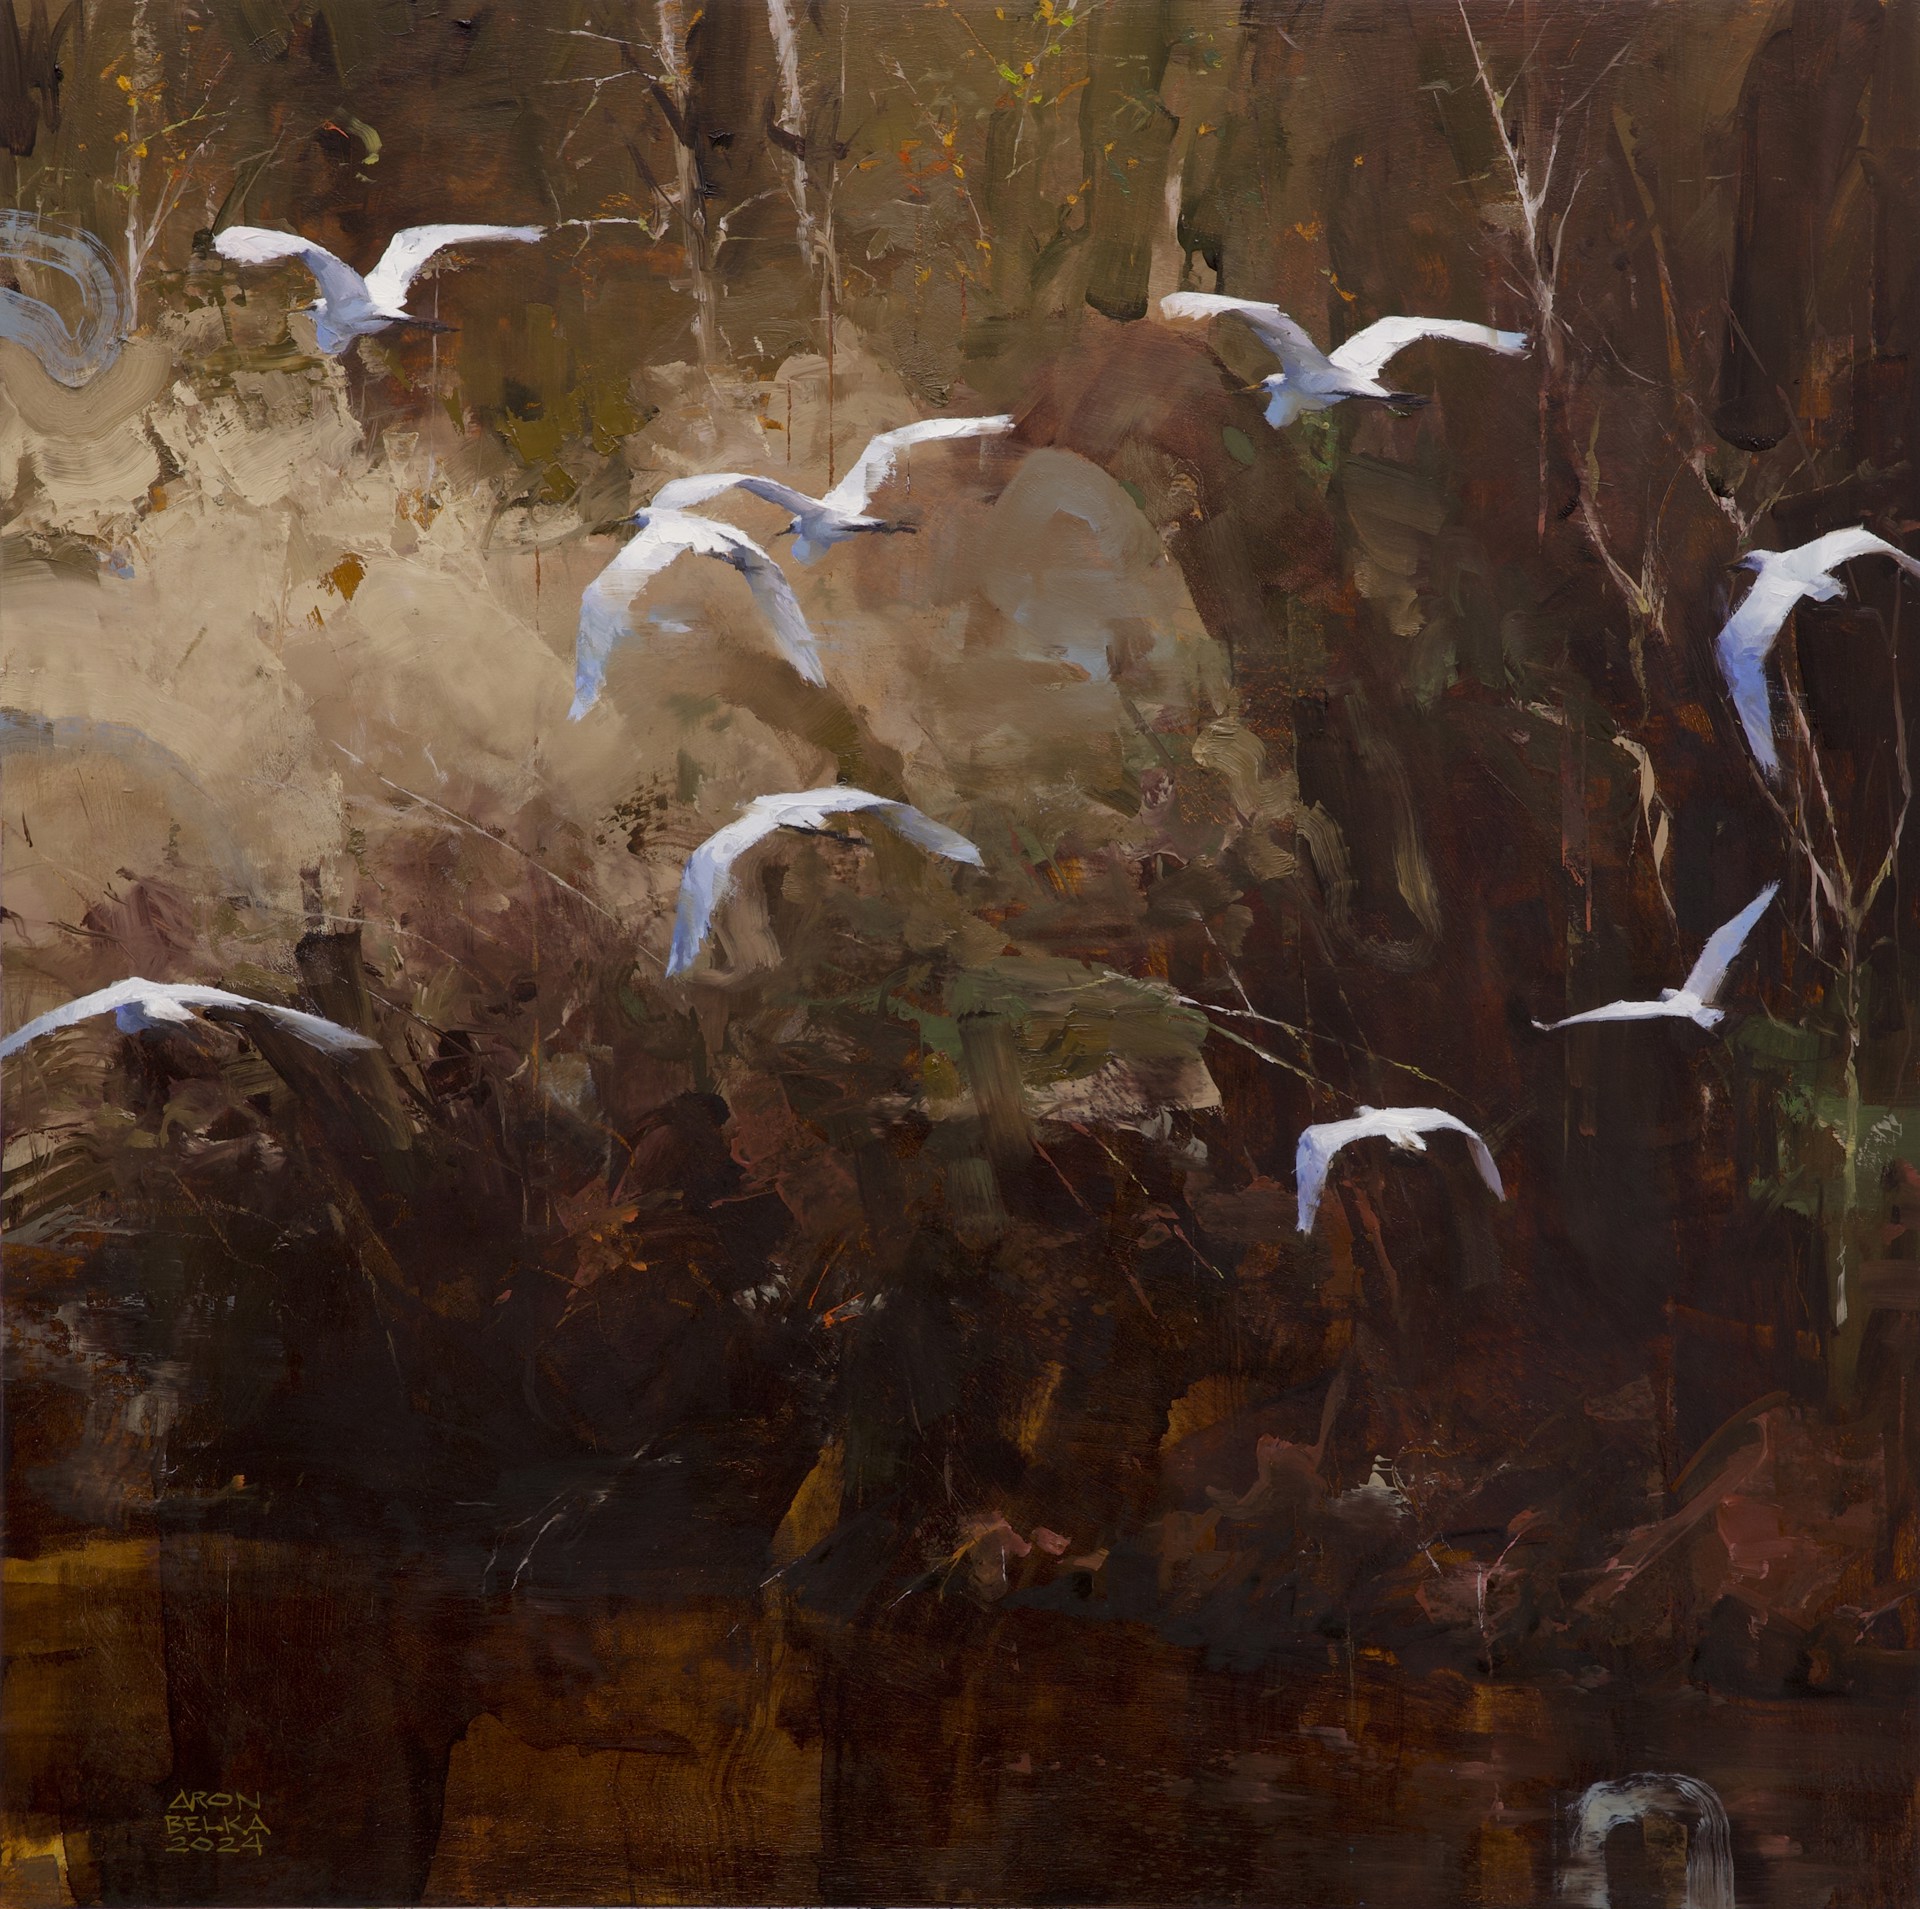 Birds of Passage by Aron Belka